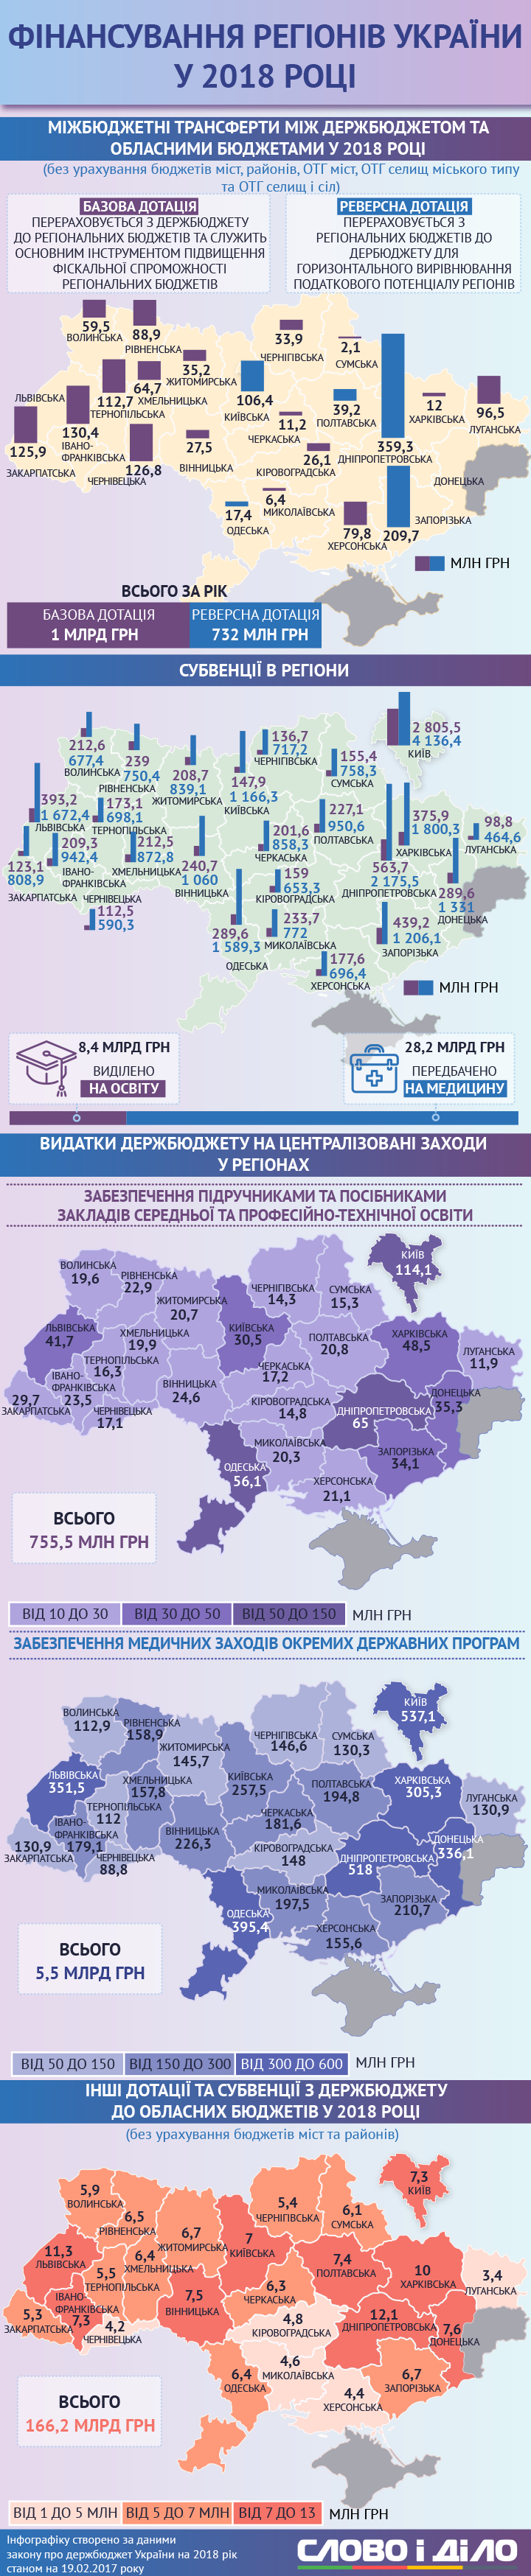 На образование выделено 8,4 млрд грн, из которых для Киева распределили столько же денег, сколько для 7 областей вместе взятых. Сколько денег в госбюджете предусмотрено на финансирование регионов в 2018 году и какие из них получили больше денег?